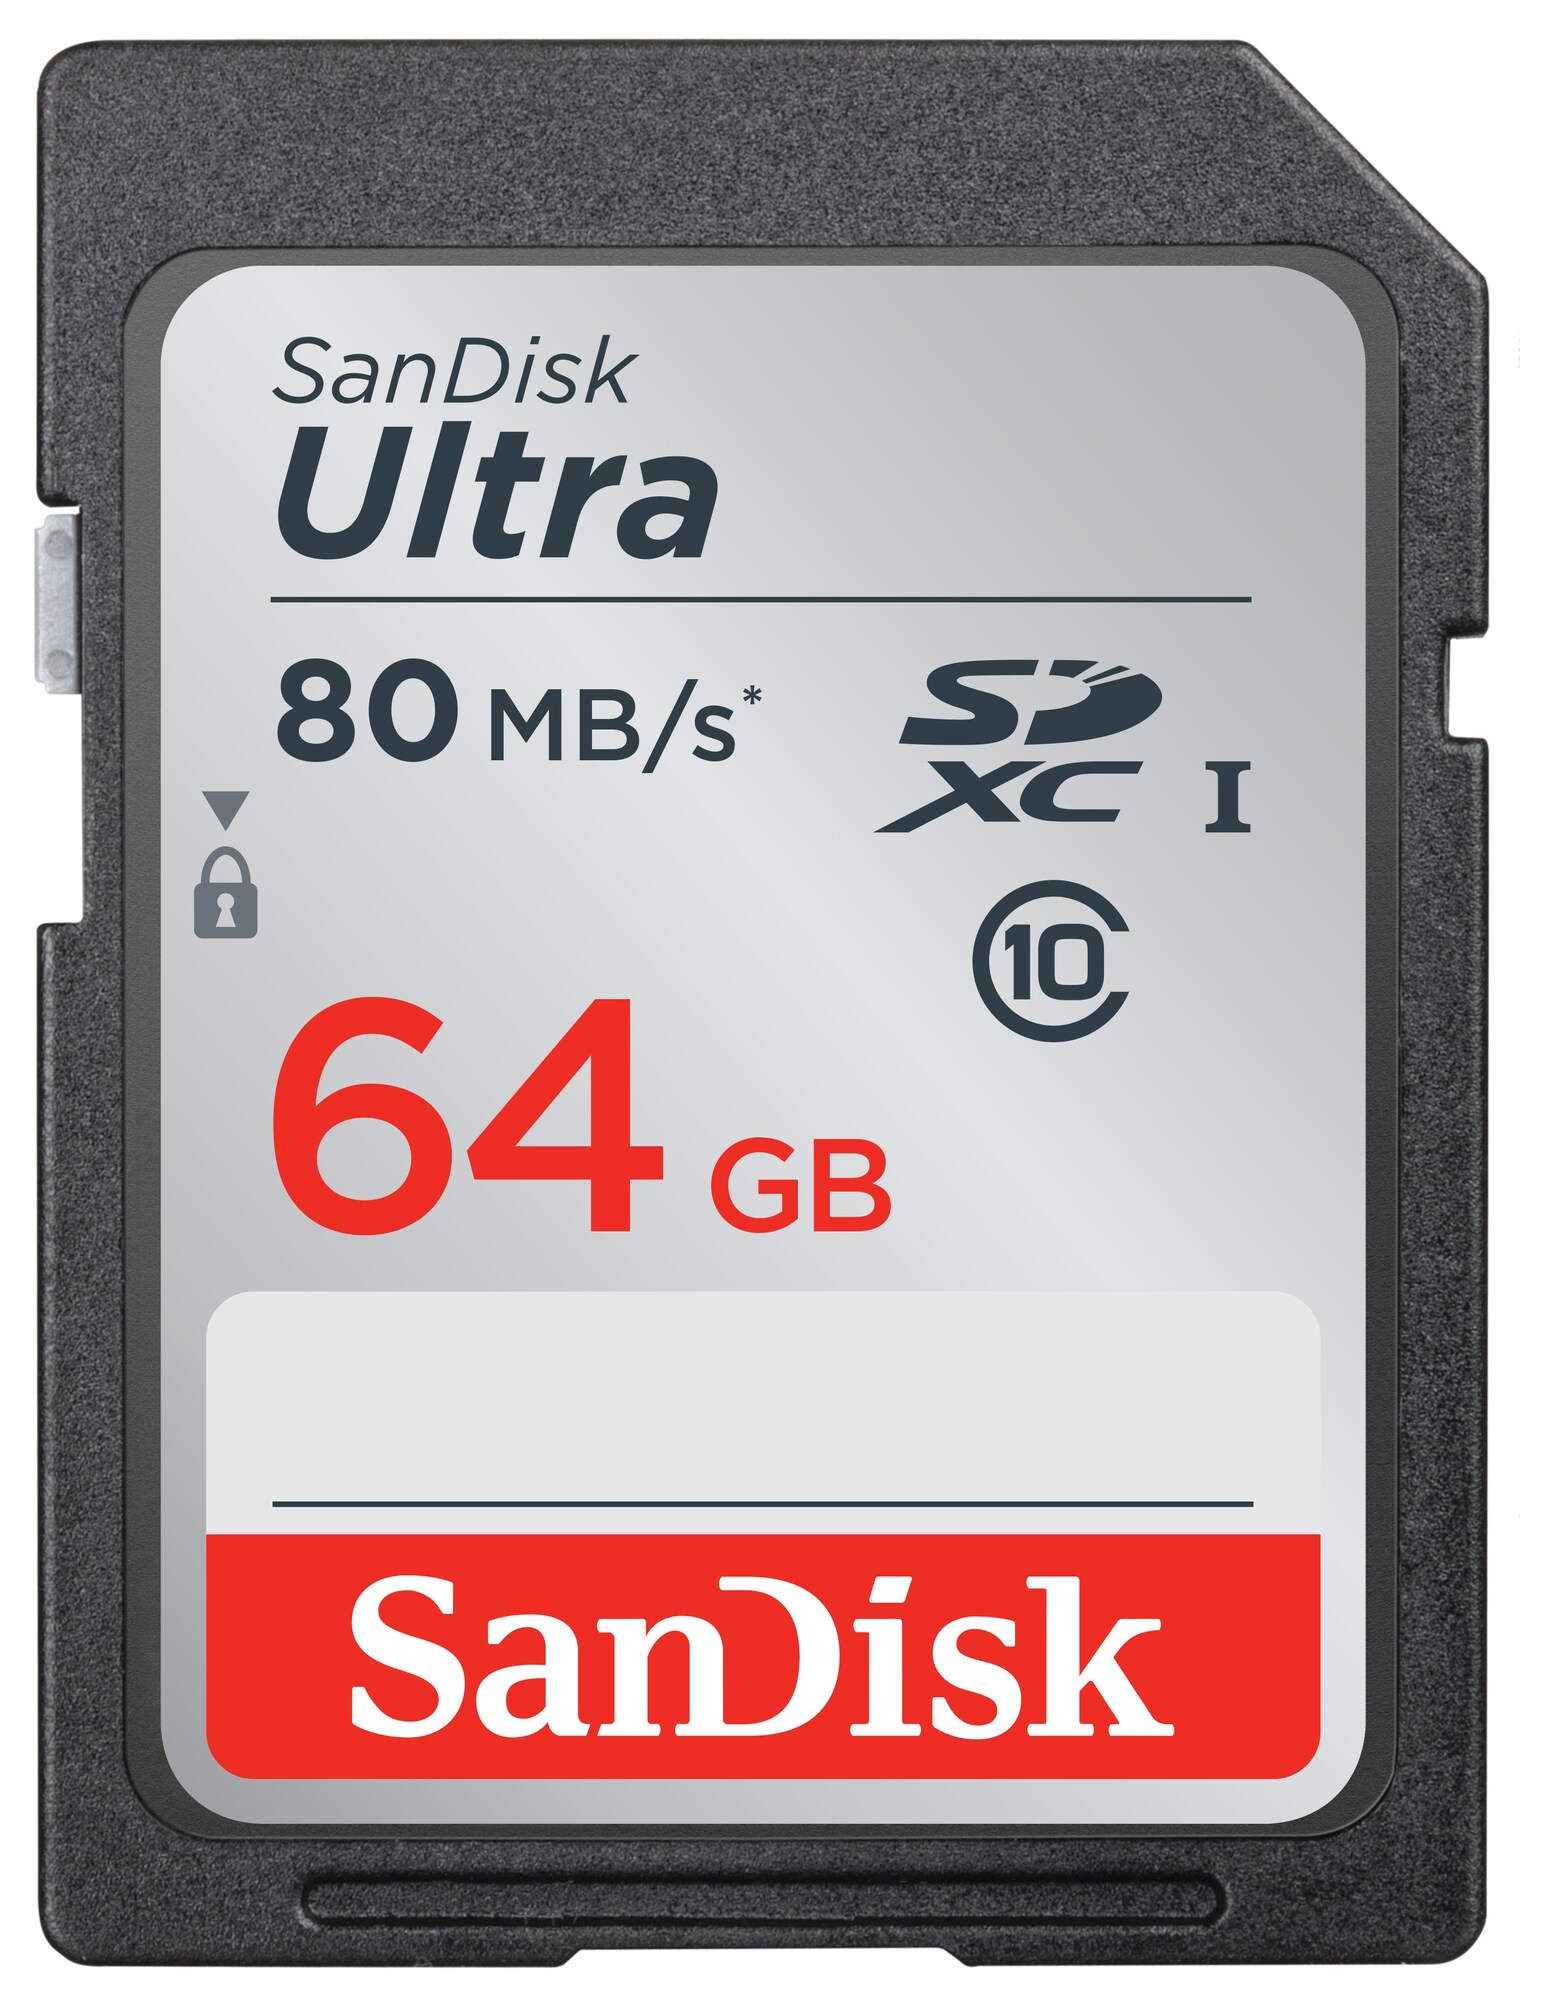 SanDisk Ultra SD Minneskort 64 GB - Elgiganten